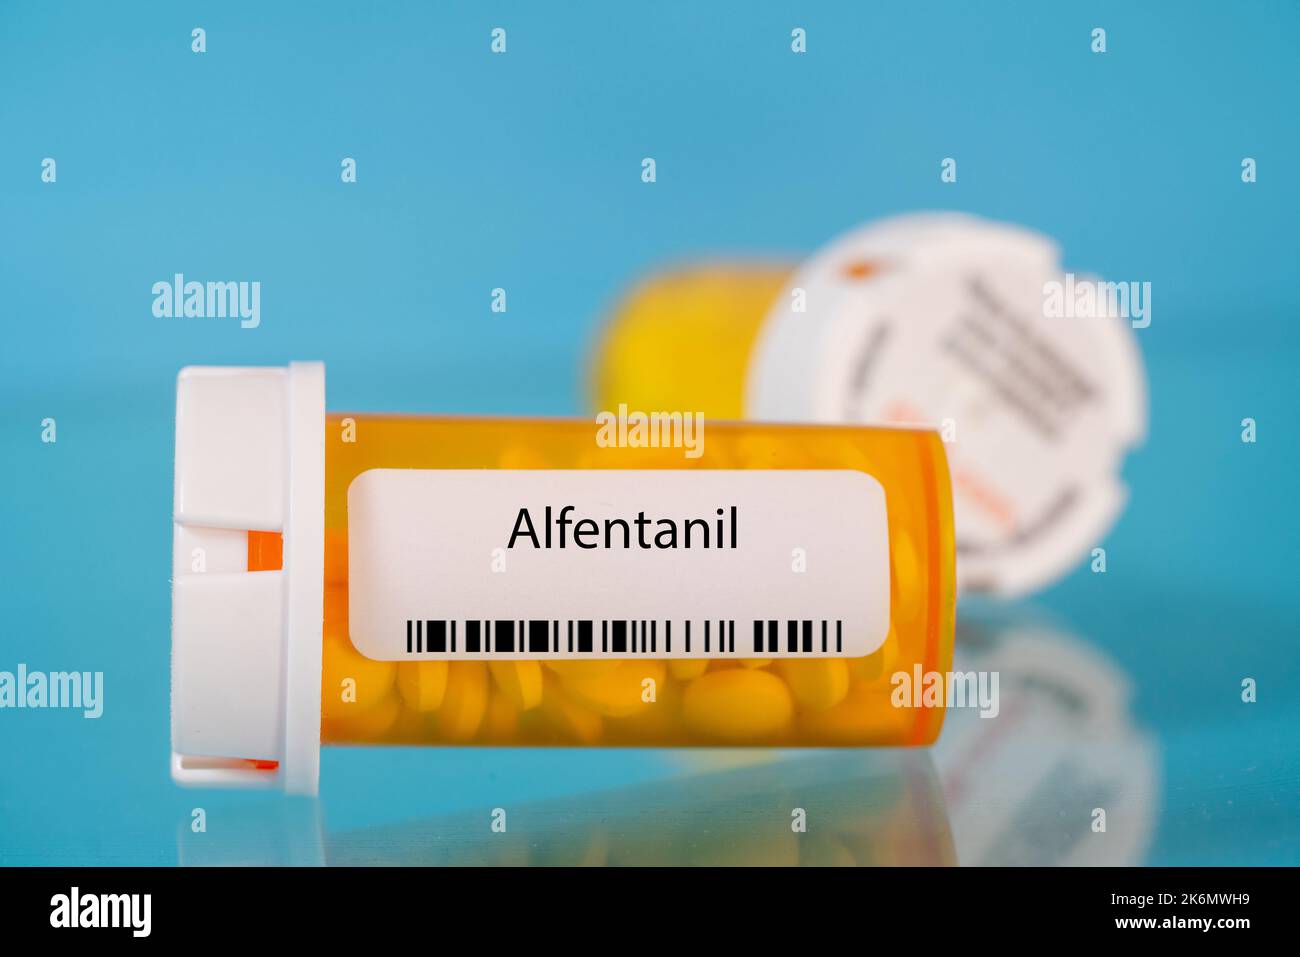 Flacon de pilules alfentanil, image conceptuelle Banque D'Images